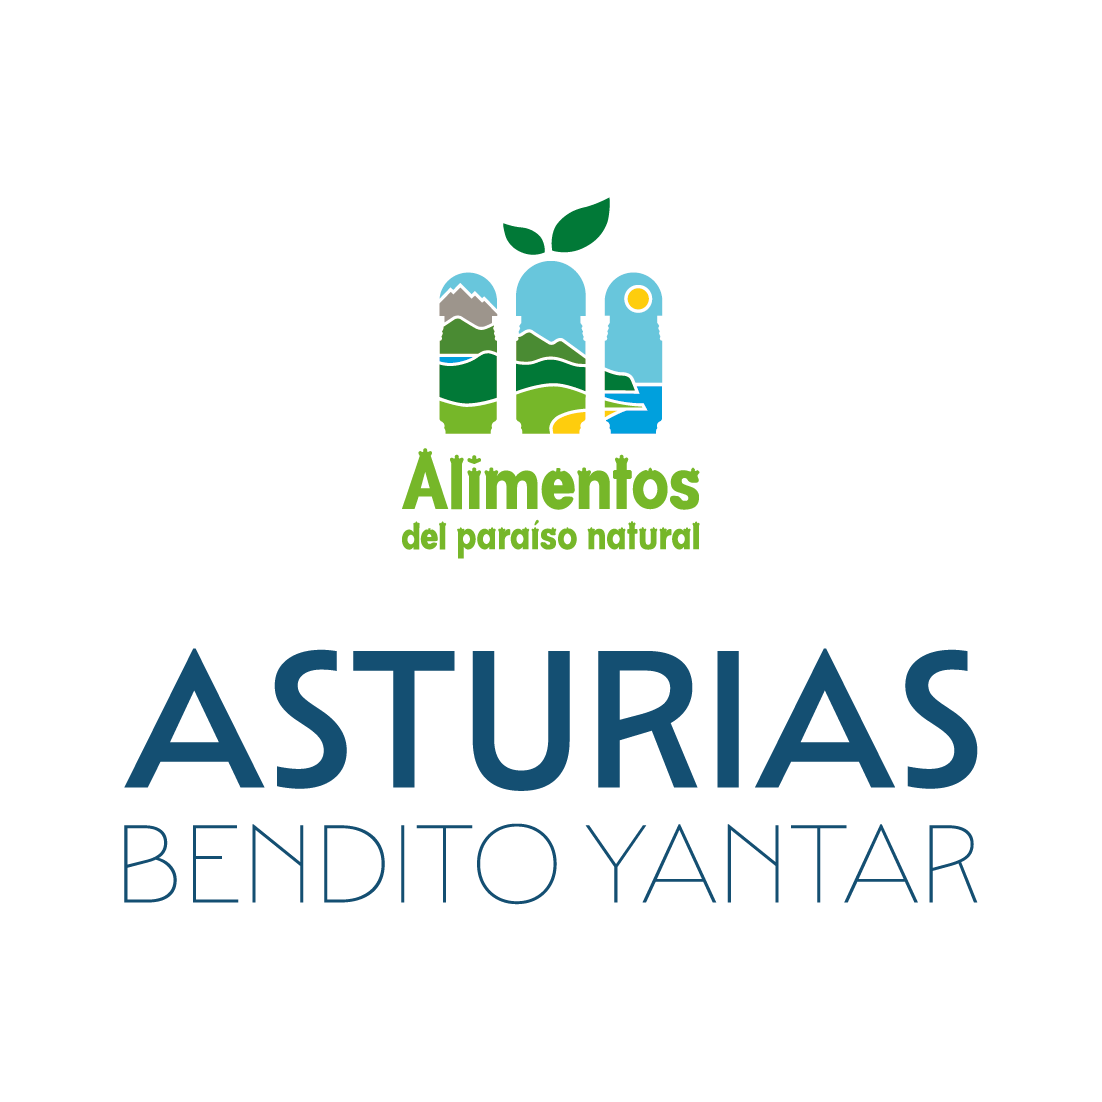 Asturias, bendito yantar